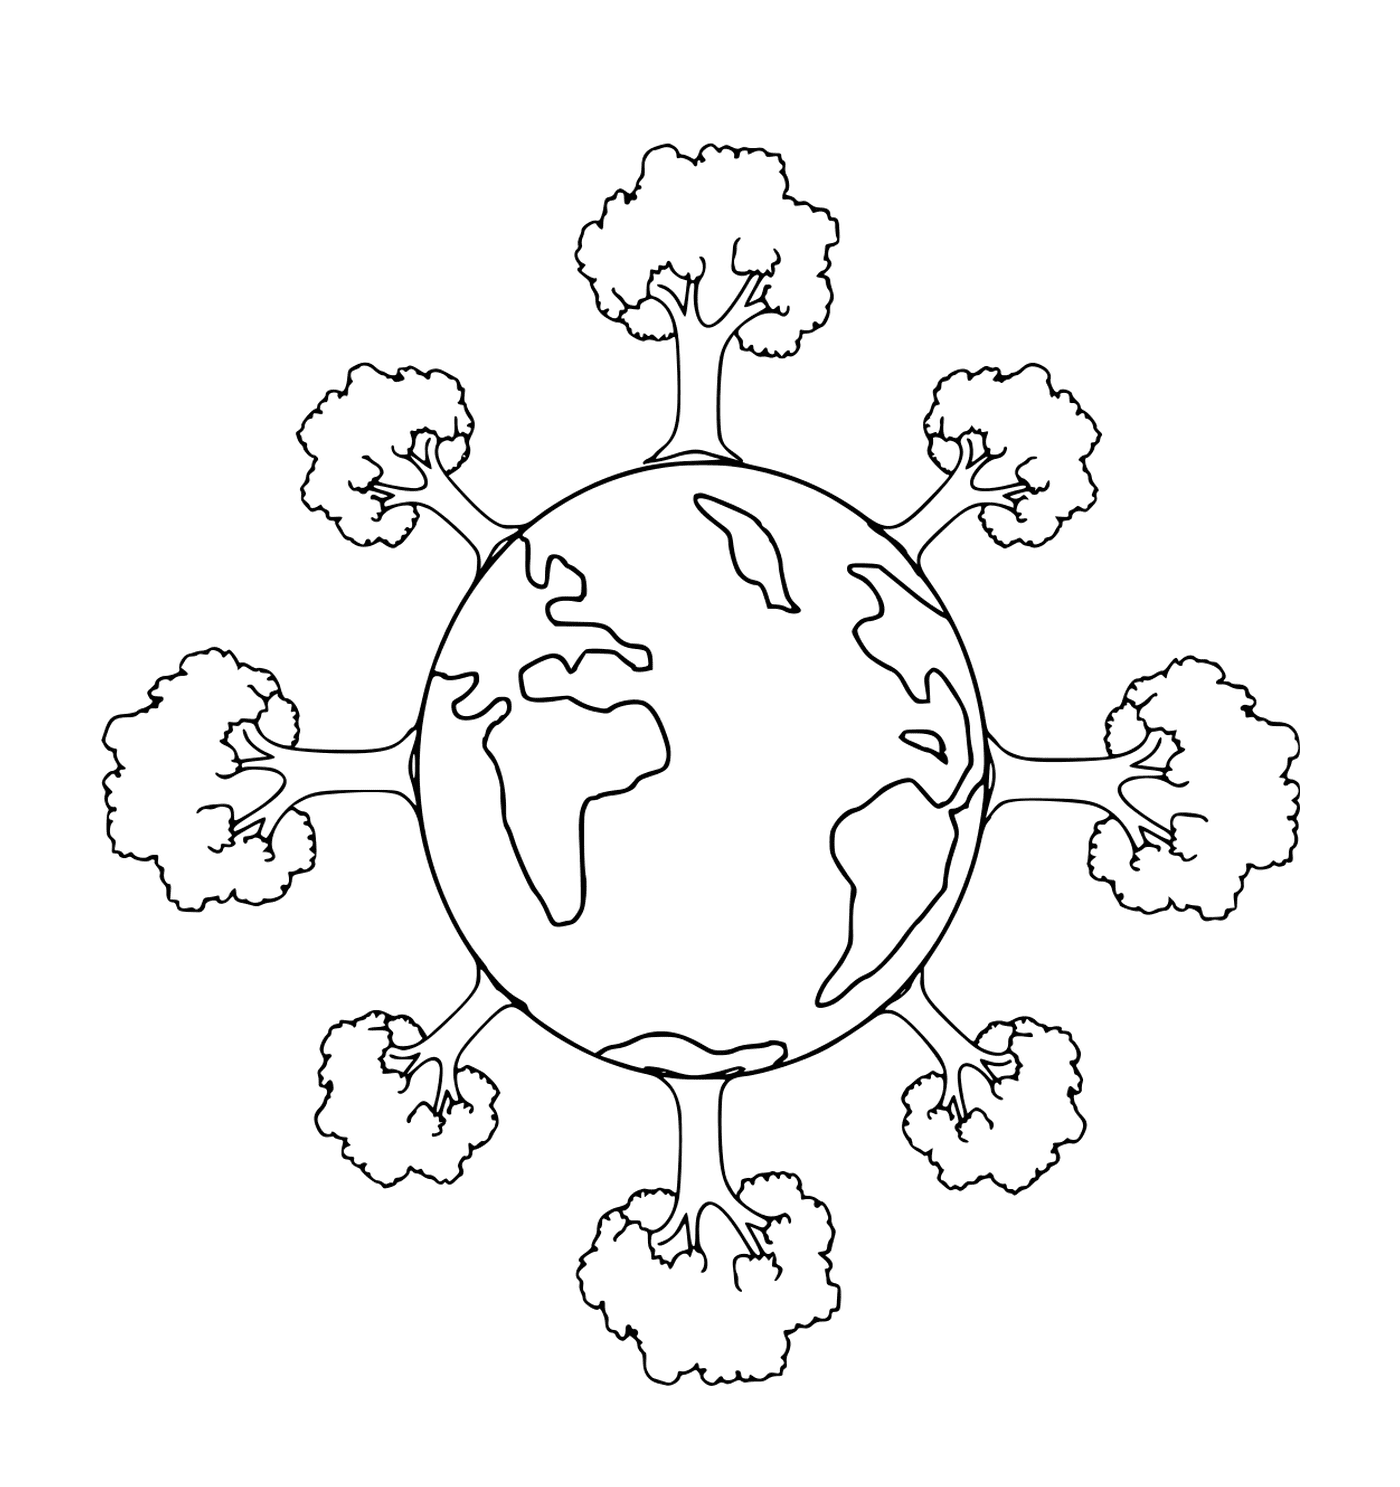  Tag der Erde: Planet umgeben von Bäumen 